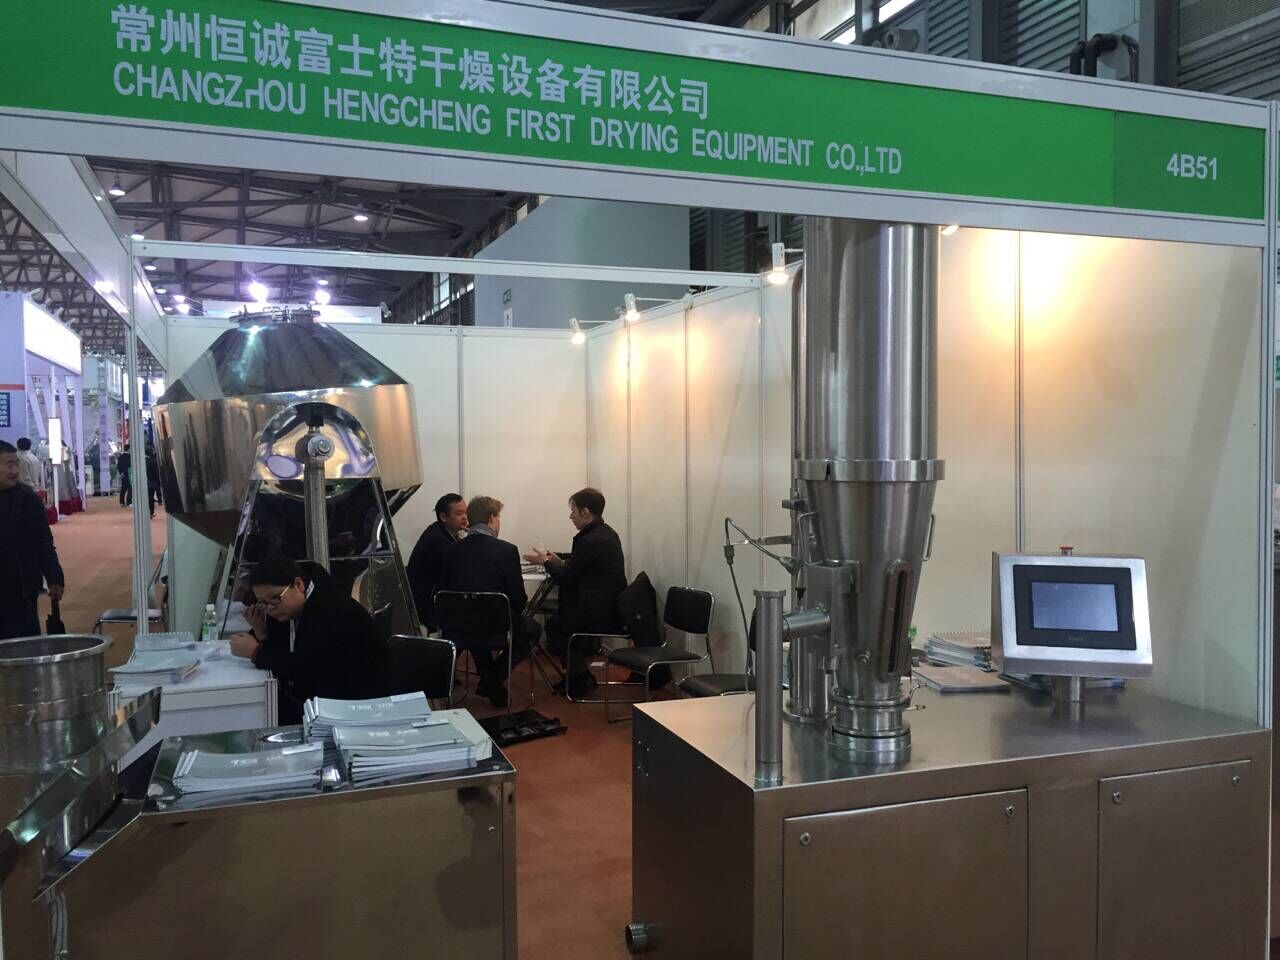 CAC第十七届中国国际农用化学品及植保展览会现场情况